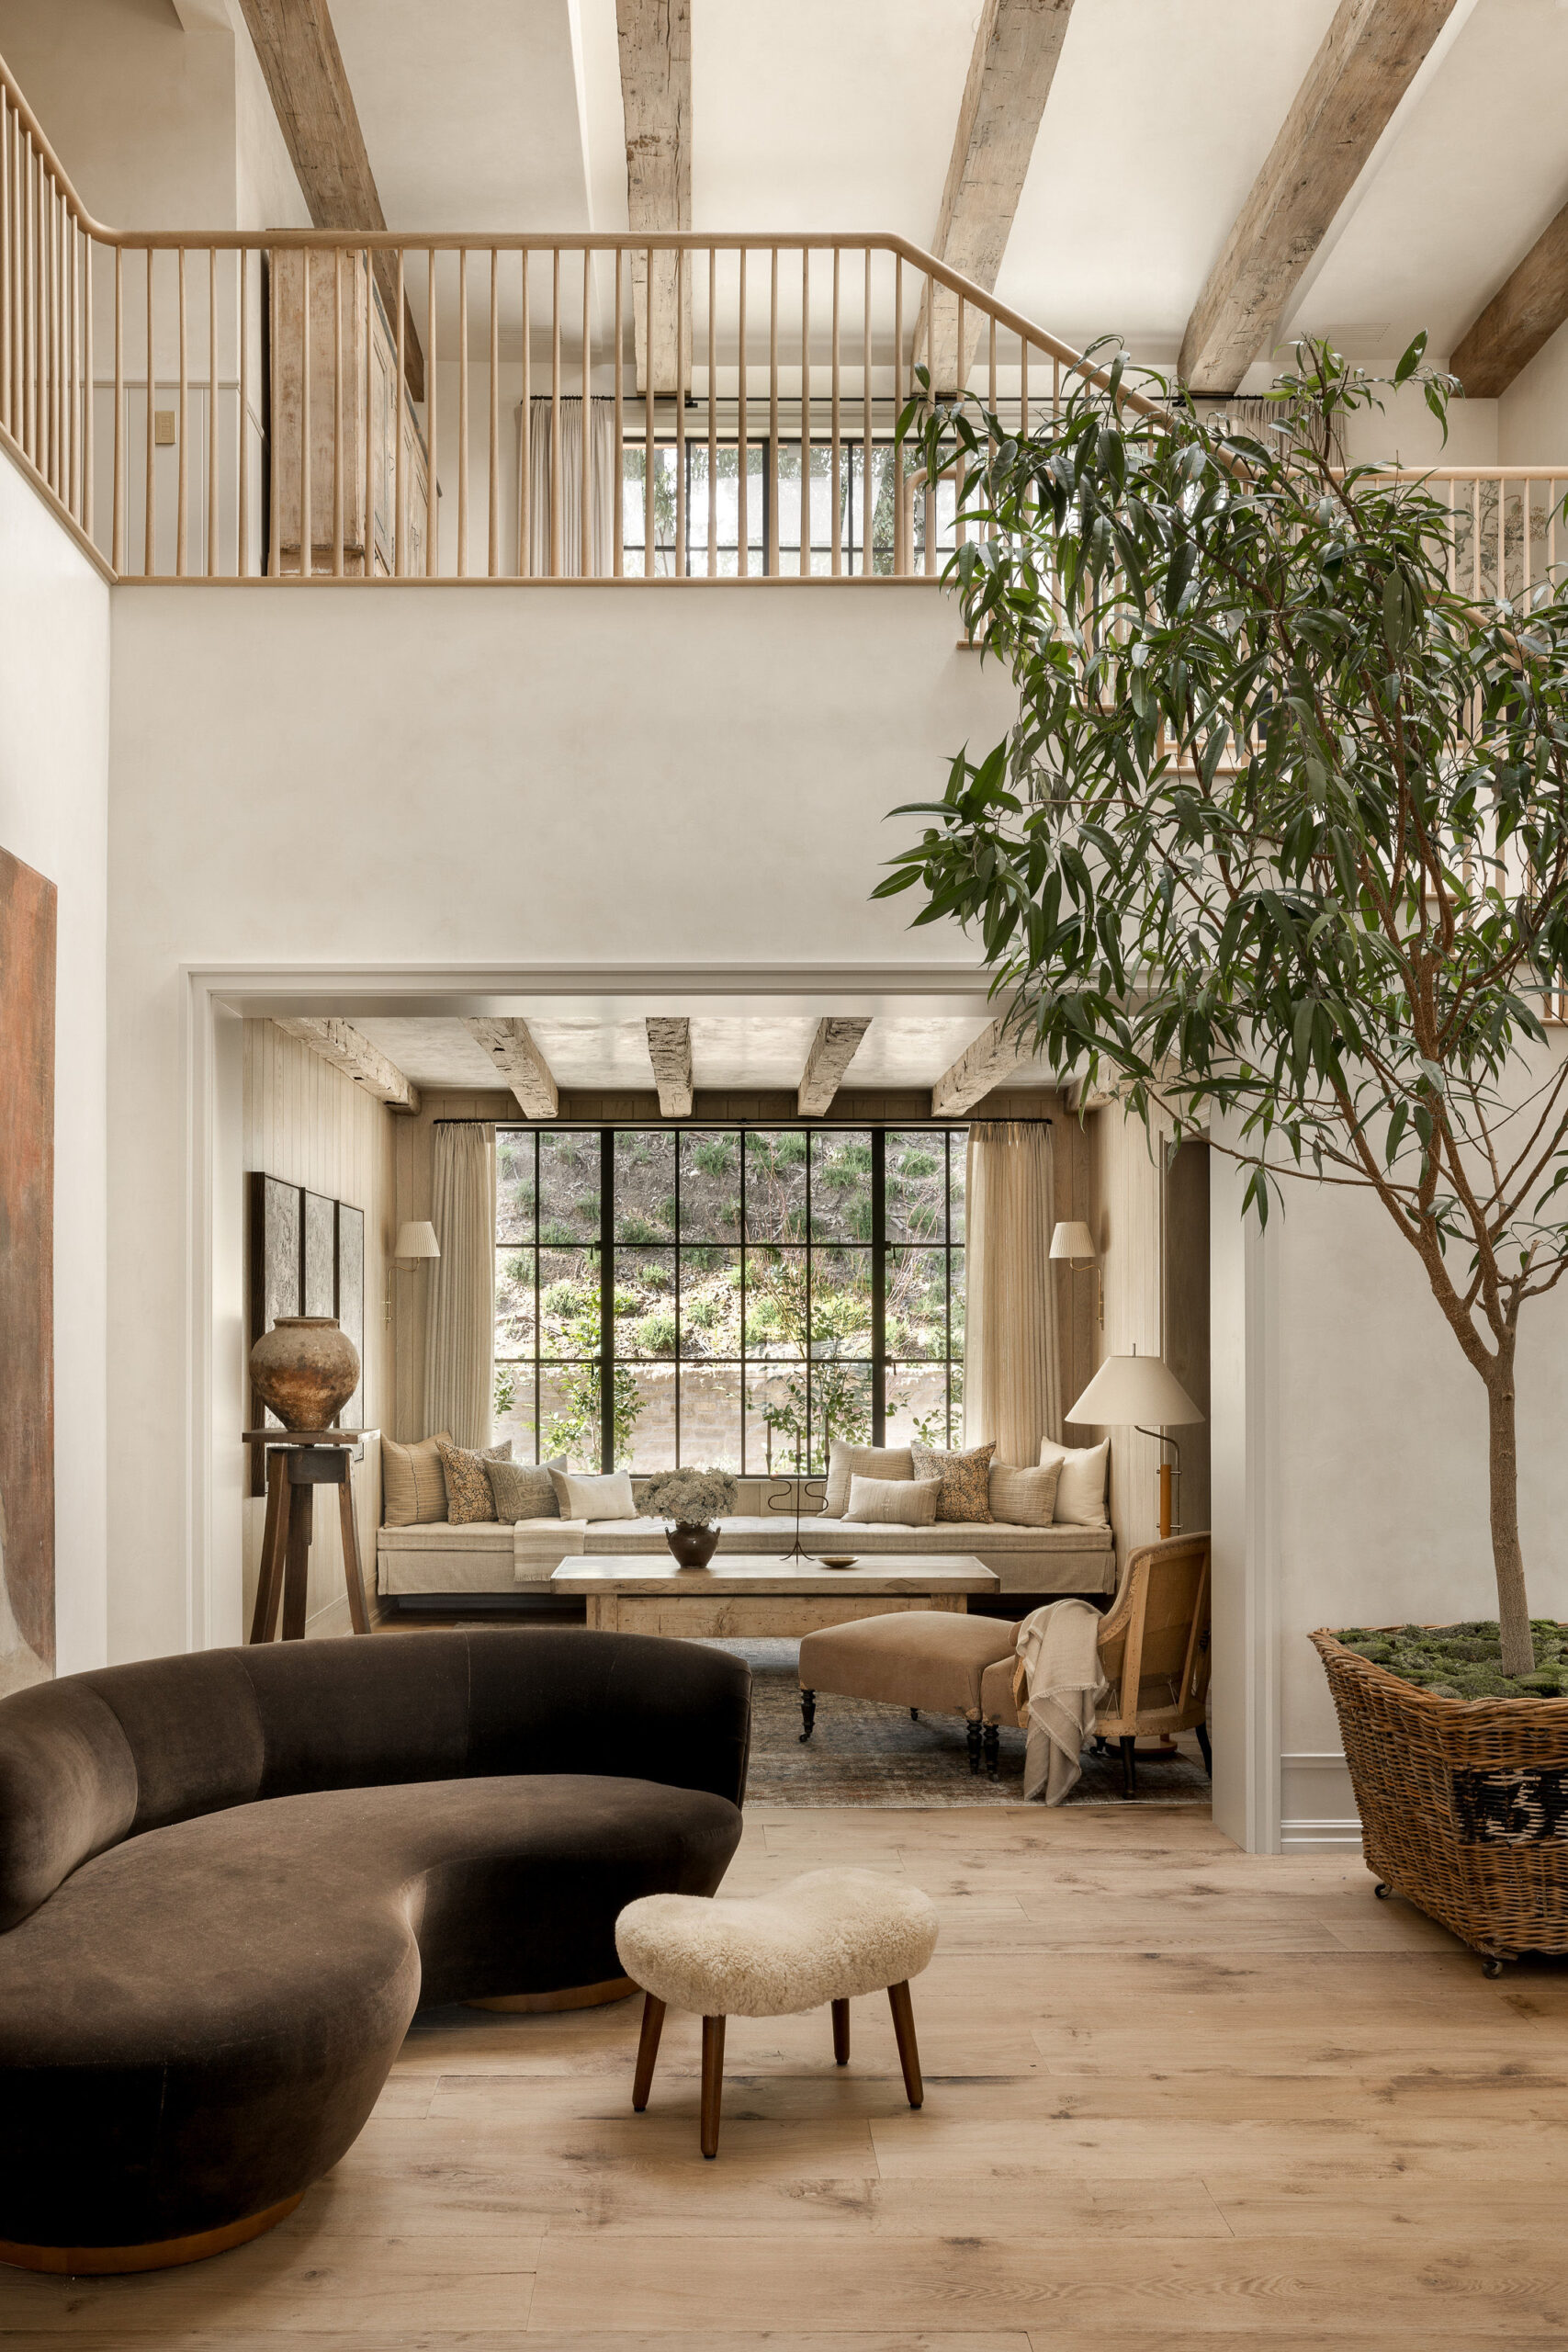 Boho home inspo  Home interior design, Decor home living room